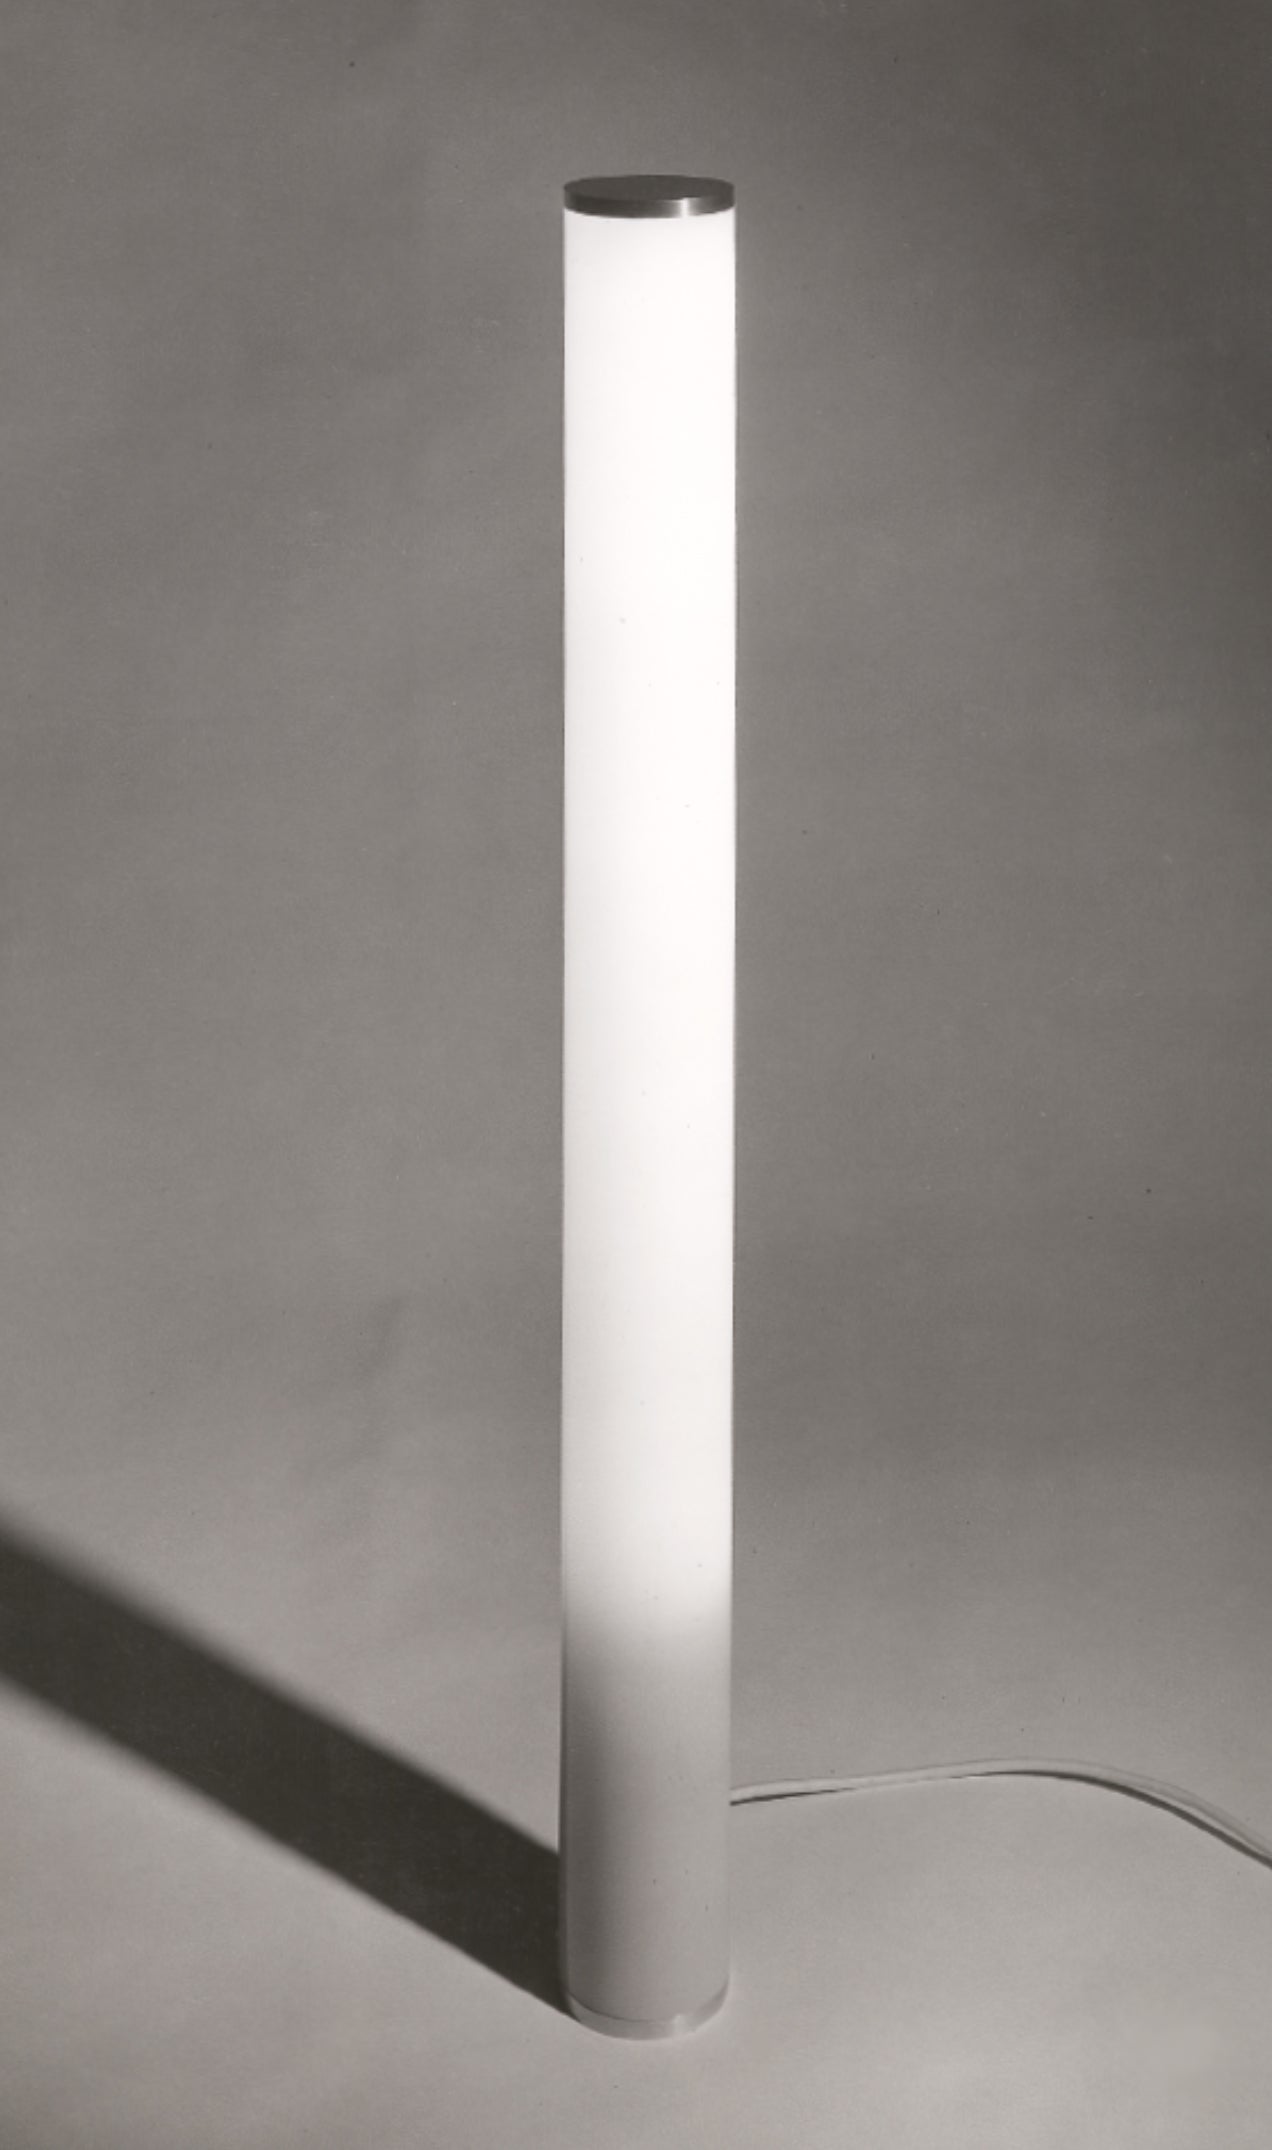 PILLA FLOOR/TABLE LAMP